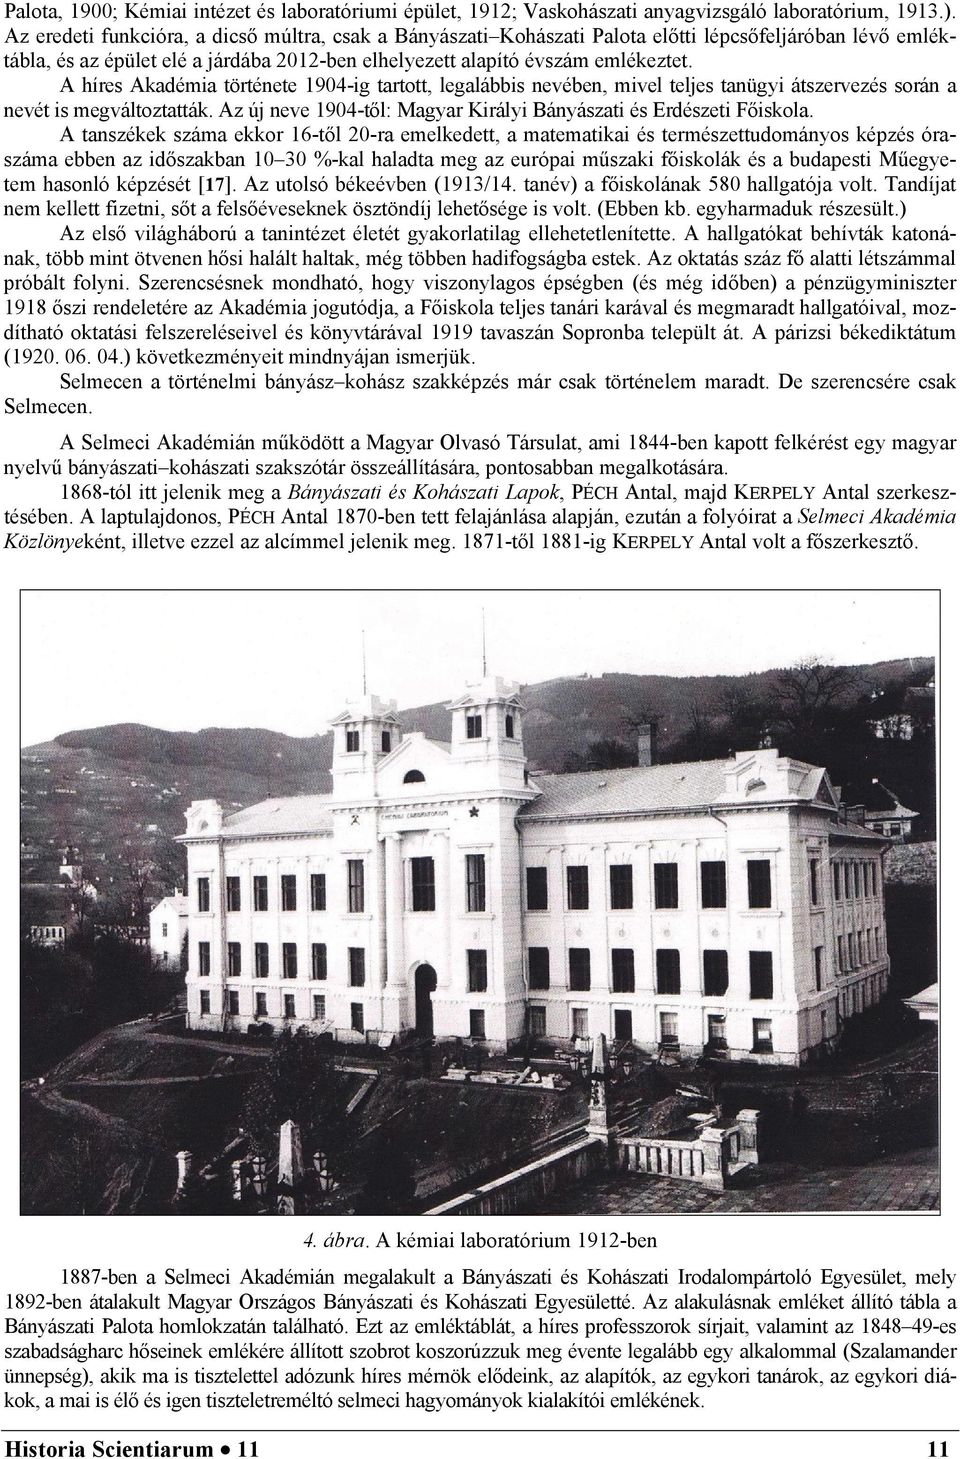 A híres Akadémia története 1904-ig tartott, legalábbis nevében, mivel teljes tanügyi átszervezés során a nevét is megváltoztatták. Az új neve 1904-től: Magyar Királyi Bányászati és Erdészeti Főiskola.